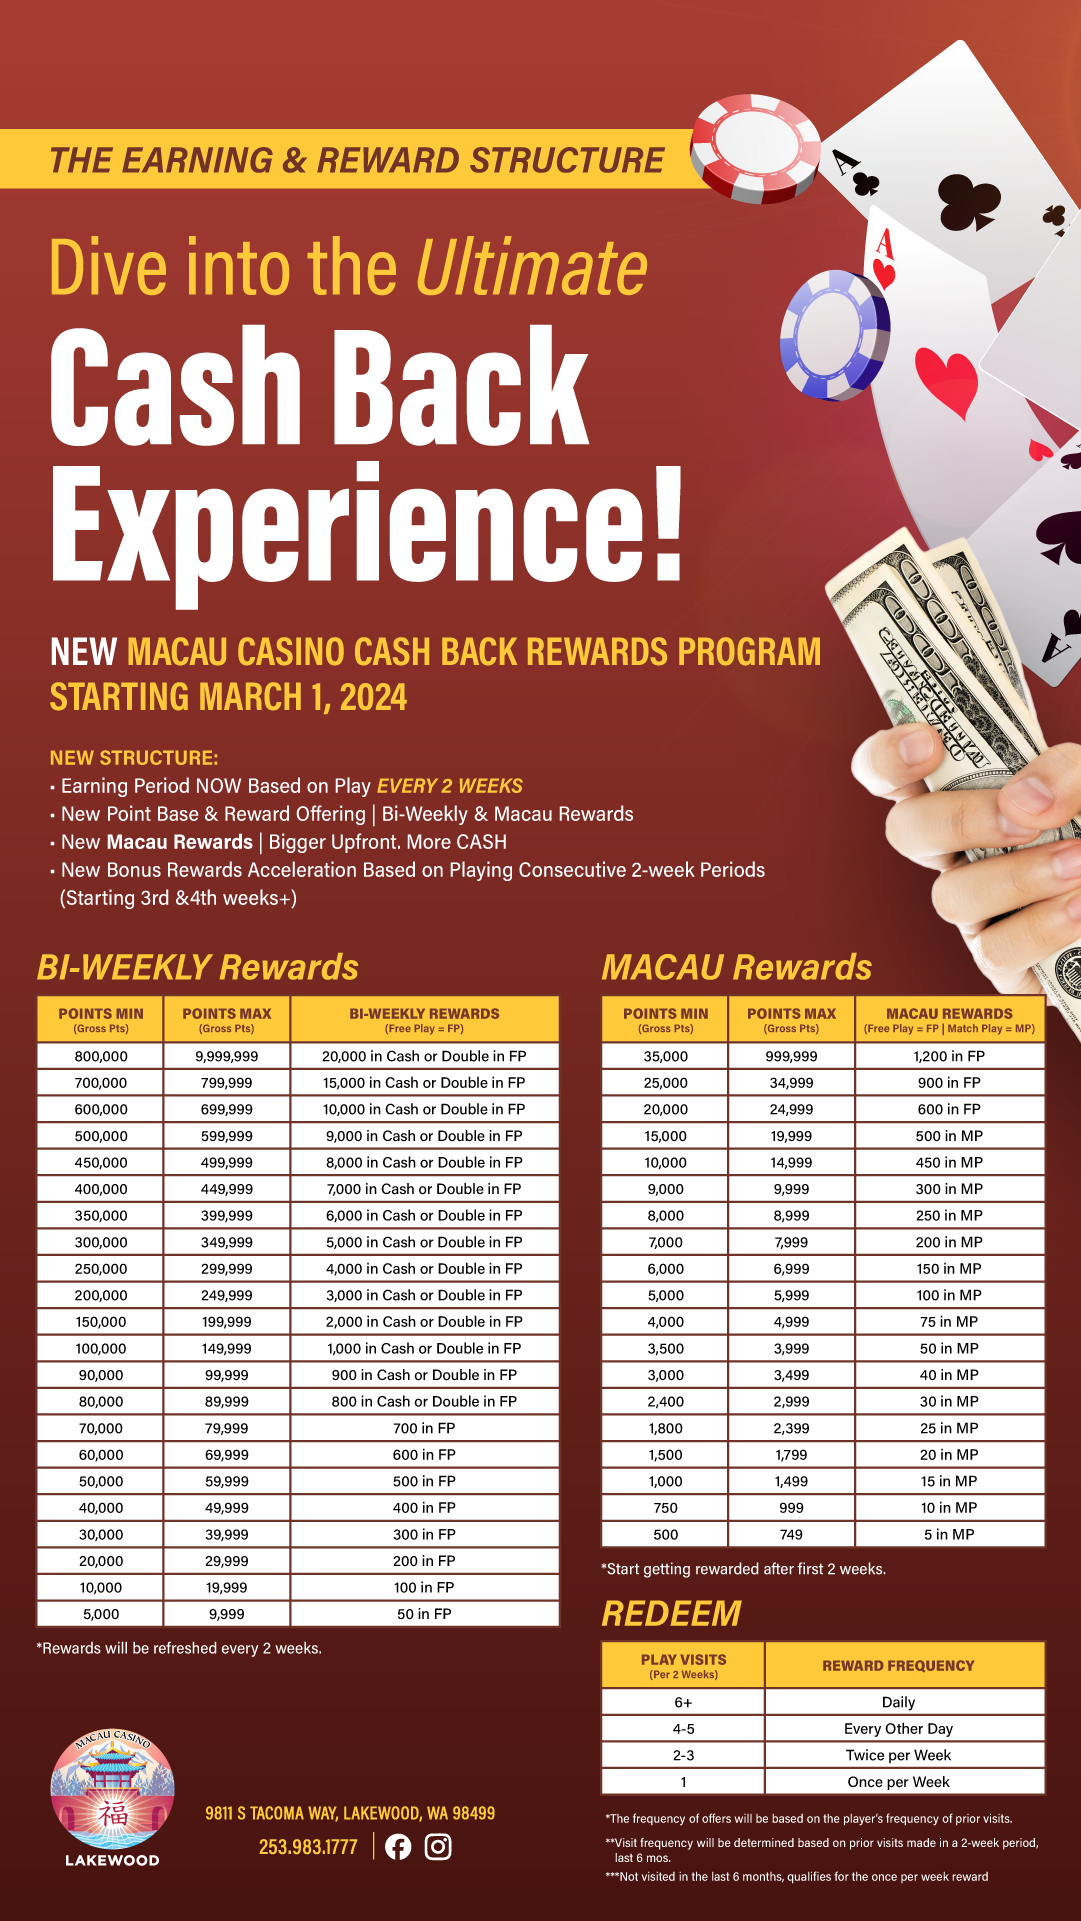 Macau Casino Lakewood, Washington | New Cash Back Program Structure